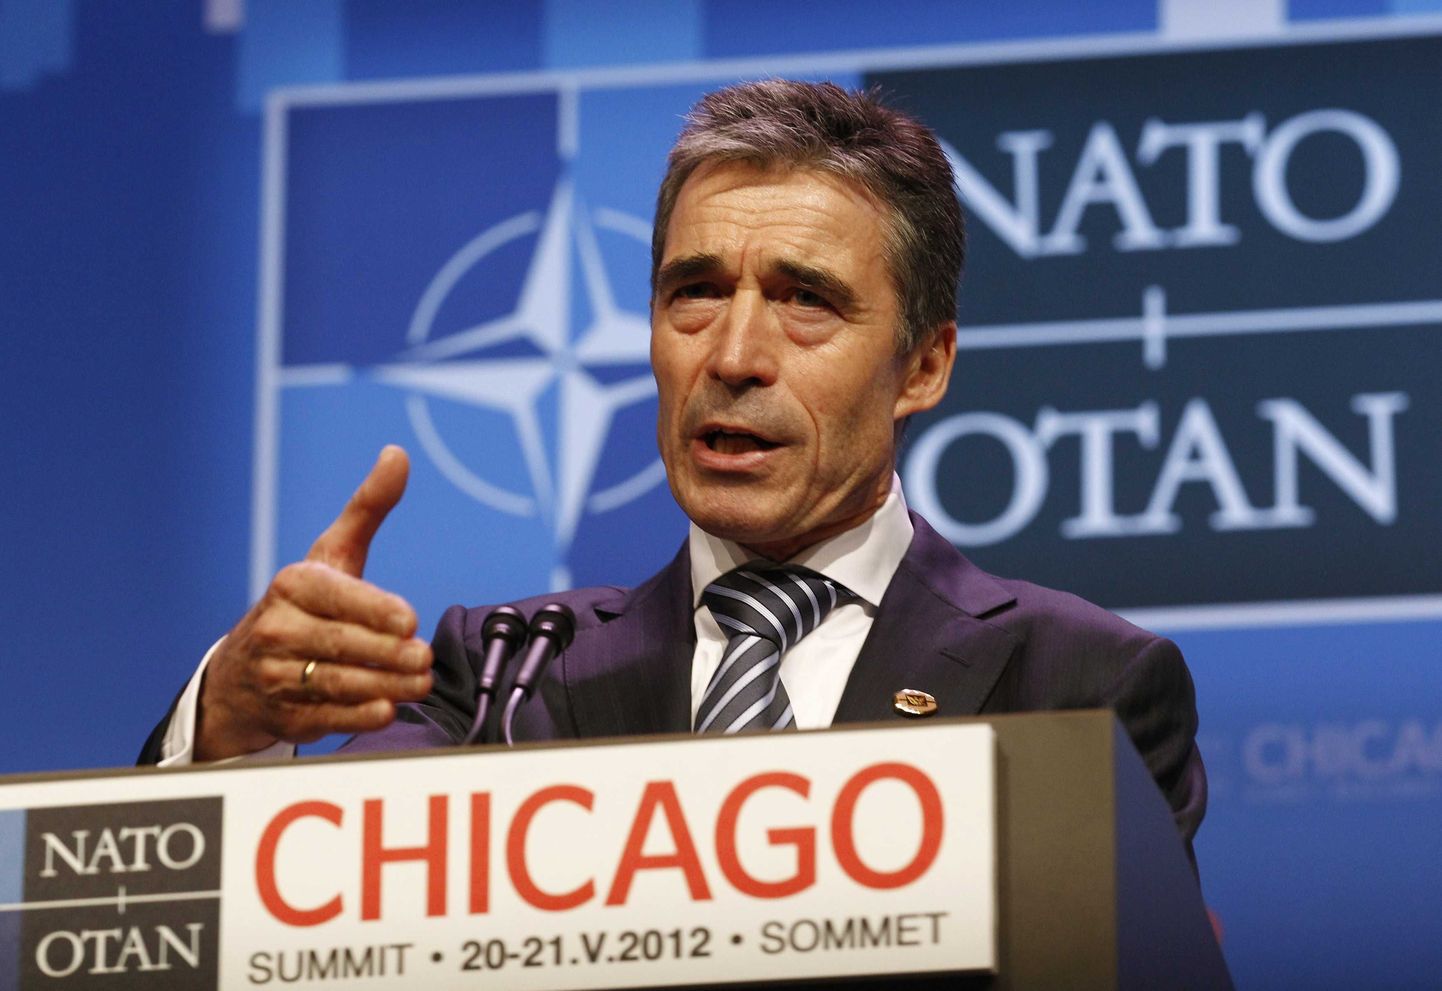 Peasekretär Anders Fogh Rasmussen eelmisel NATO tippkohtumisel Chicagos.